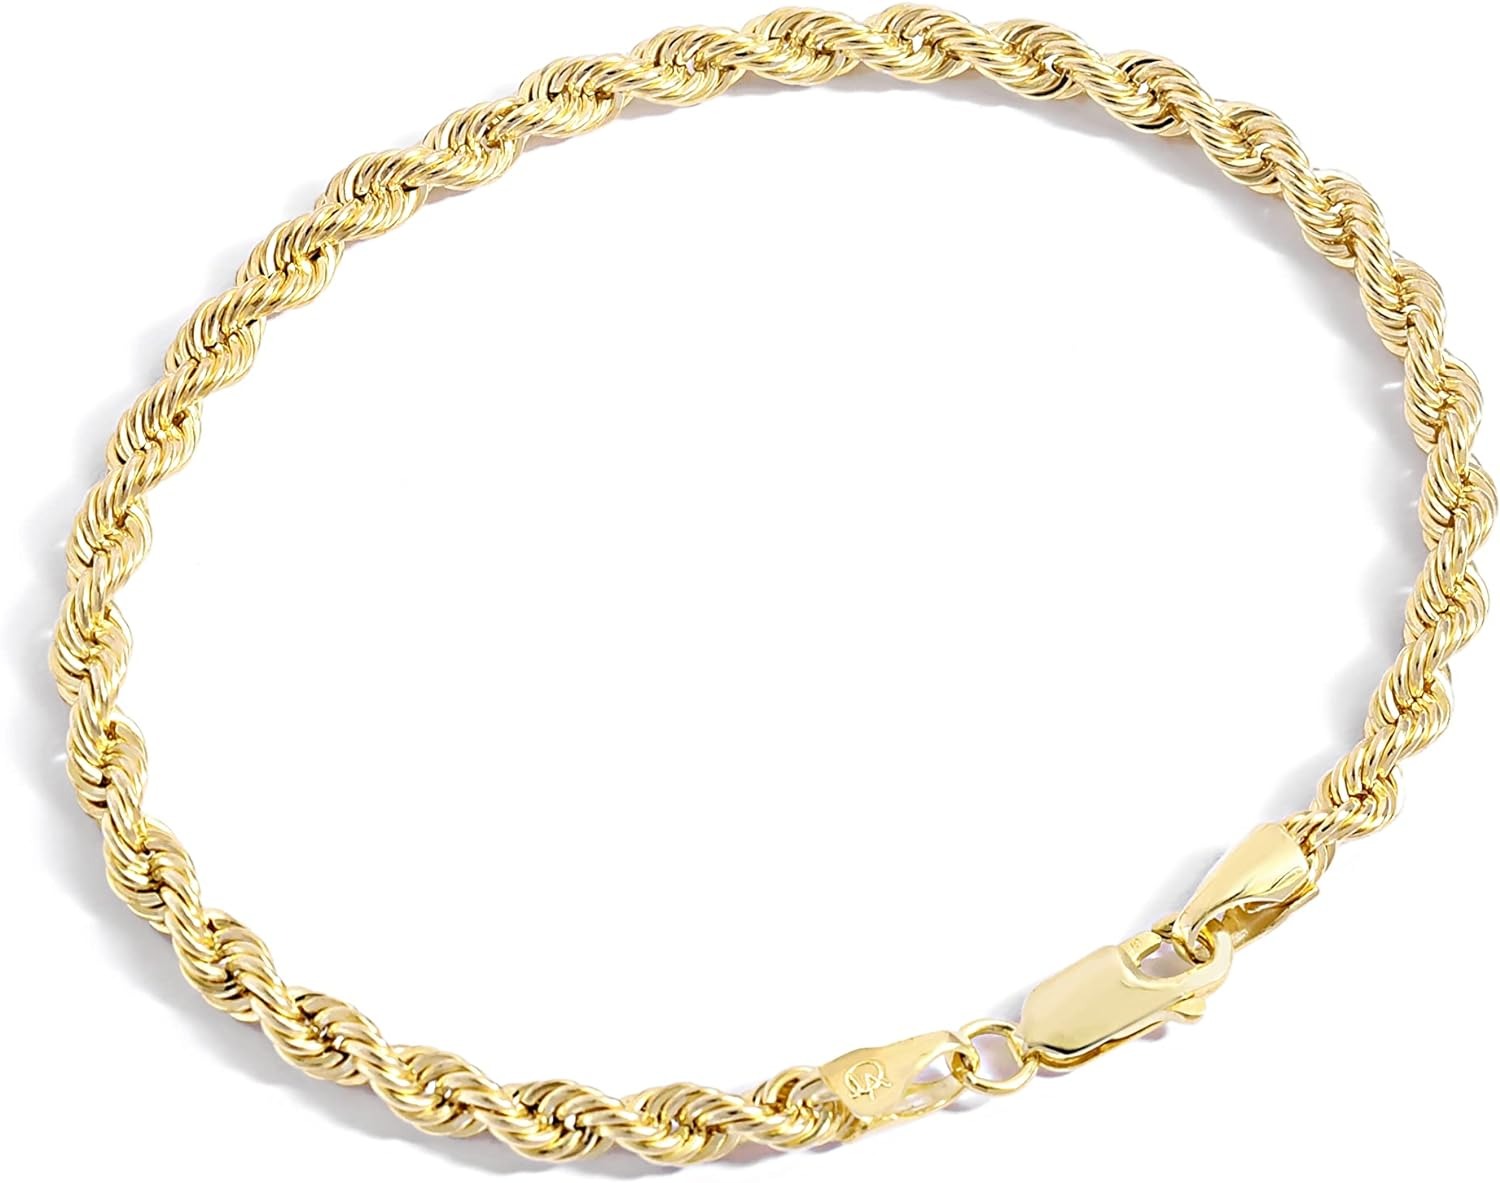 Jewelry Atelier Collezione di bracciali a catena riempiti d'oro - Bracciali a catena a corda riempita in oro giallo massiccio 14K per donne e uomini con diverse dimensioni (2,7 mm, 3,8 mm)